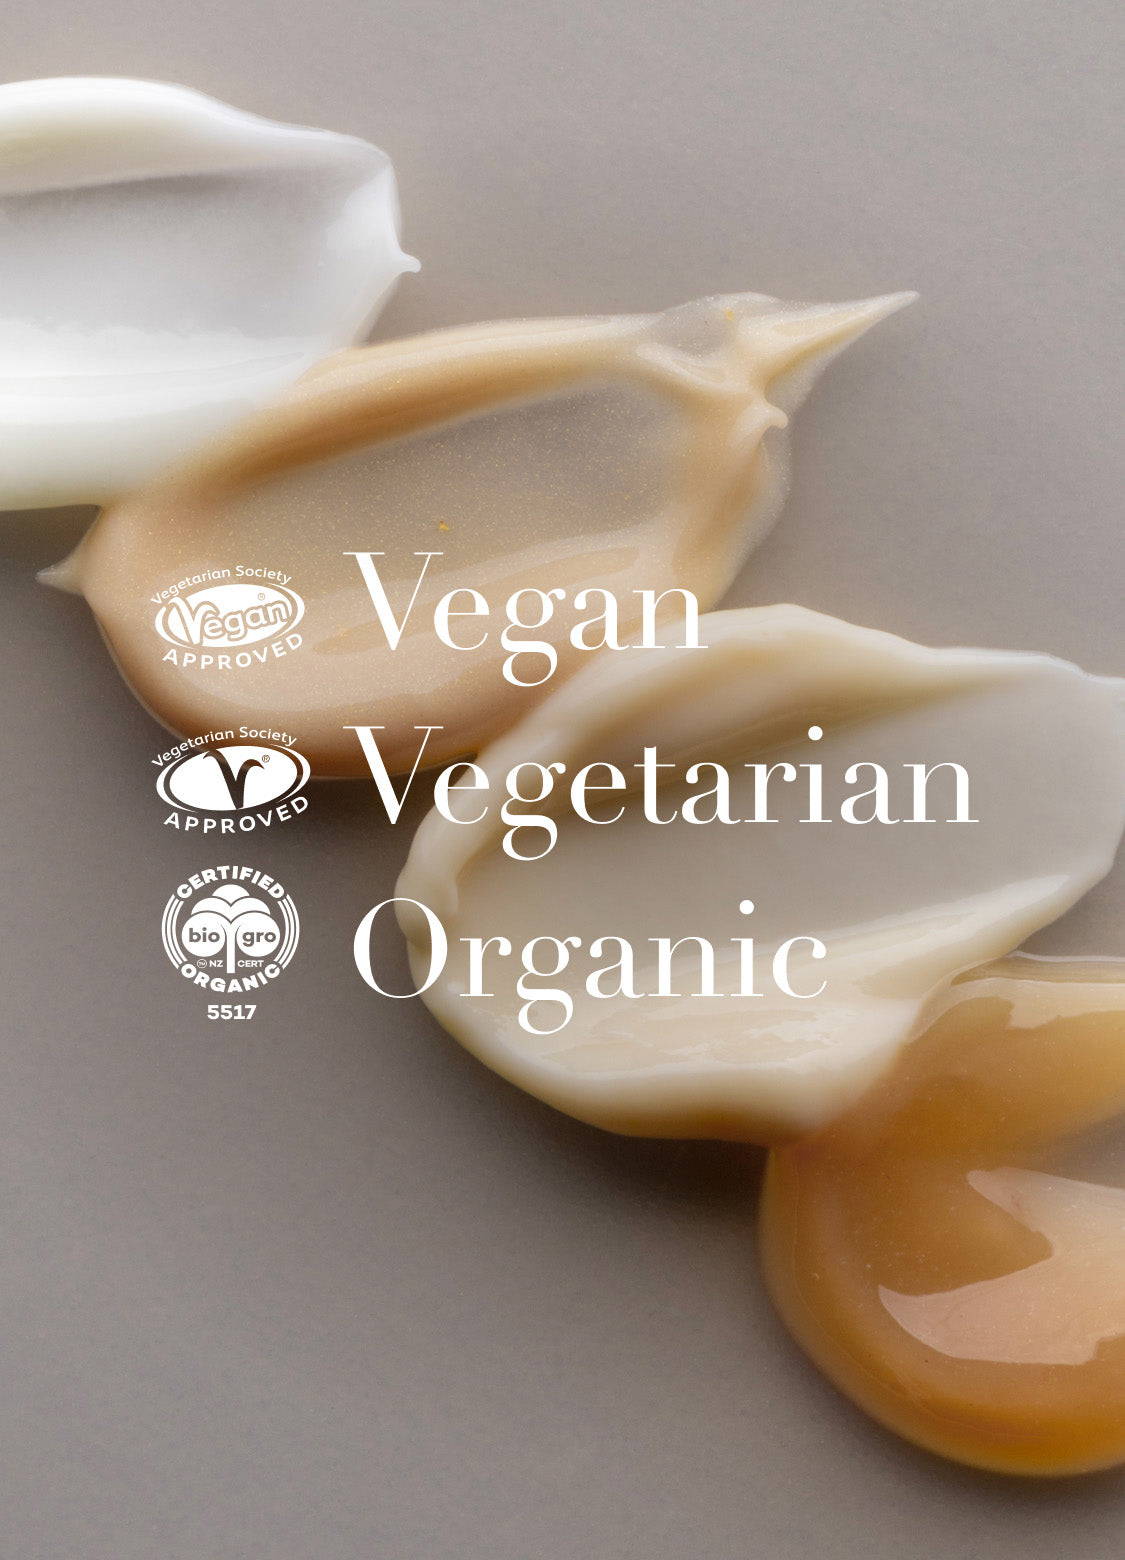 Vegan, vegetarian, organic.